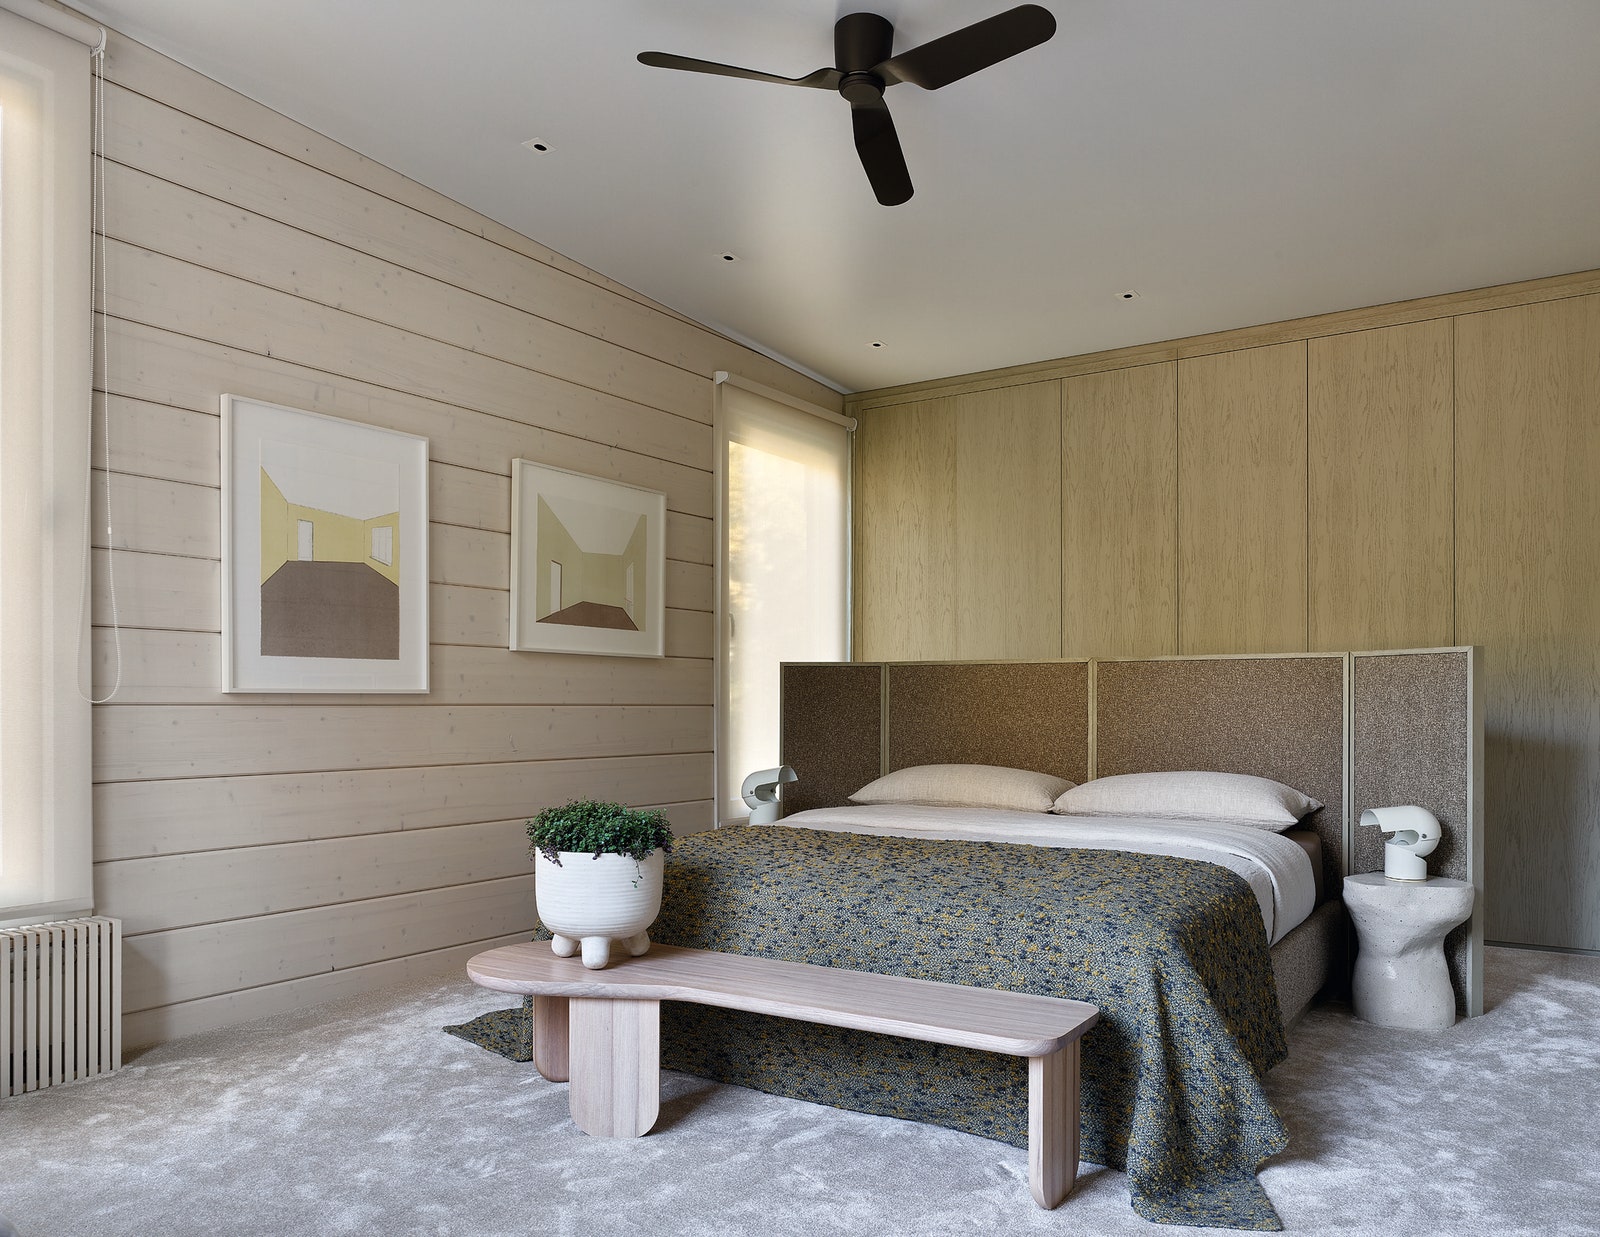 Спальня. Кровать сделана на заказ в мастерской Argento Style лавка Kim керамические столики Savour Design на стене...